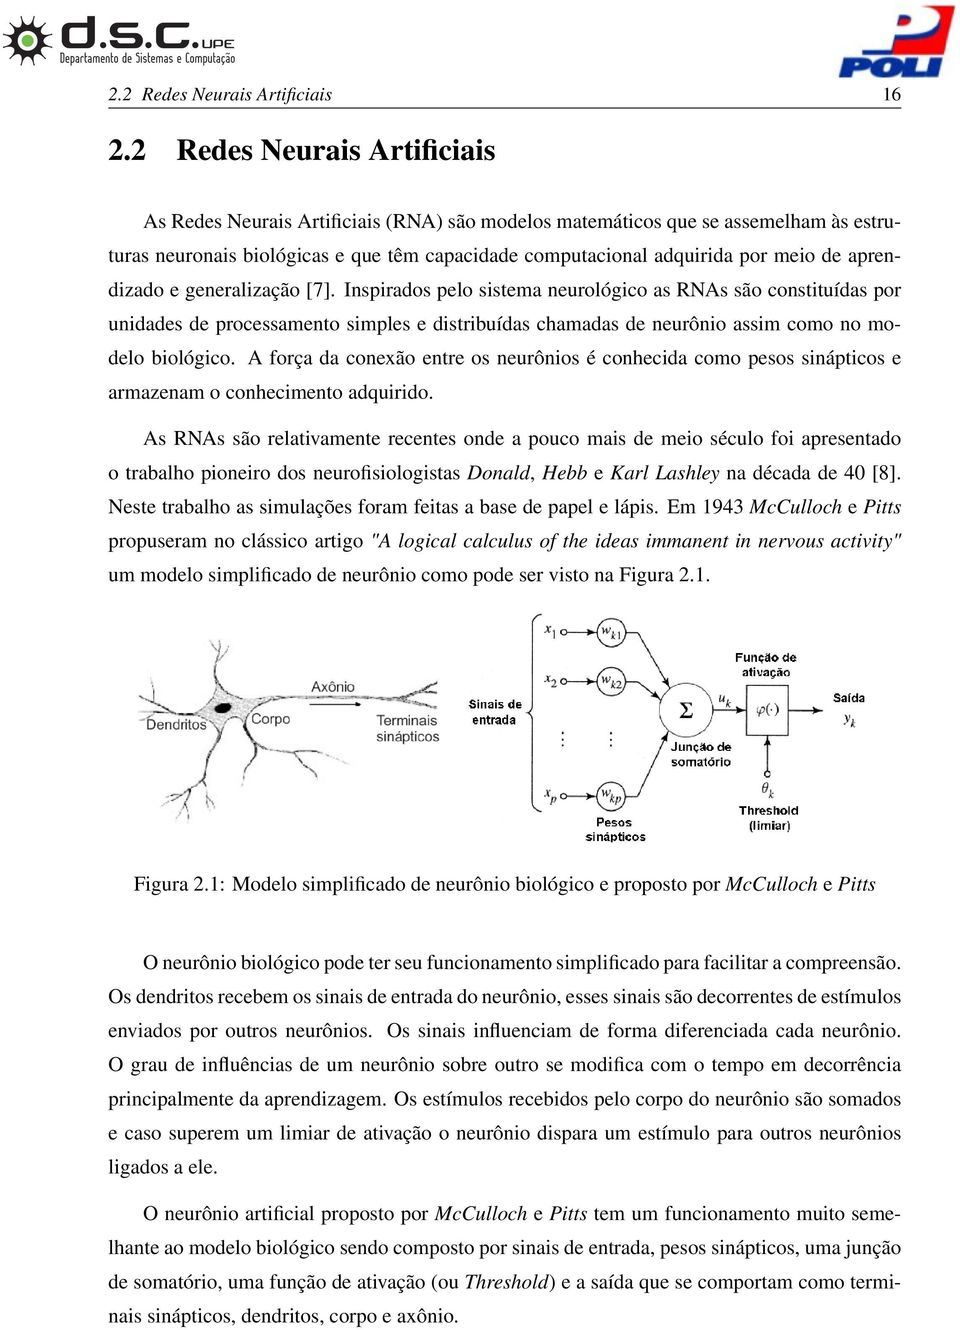 aprendizado e generalização [7]. Inspirados pelo sistema neurológico as RNAs são constituídas por unidades de processamento simples e distribuídas chamadas de neurônio assim como no modelo biológico.